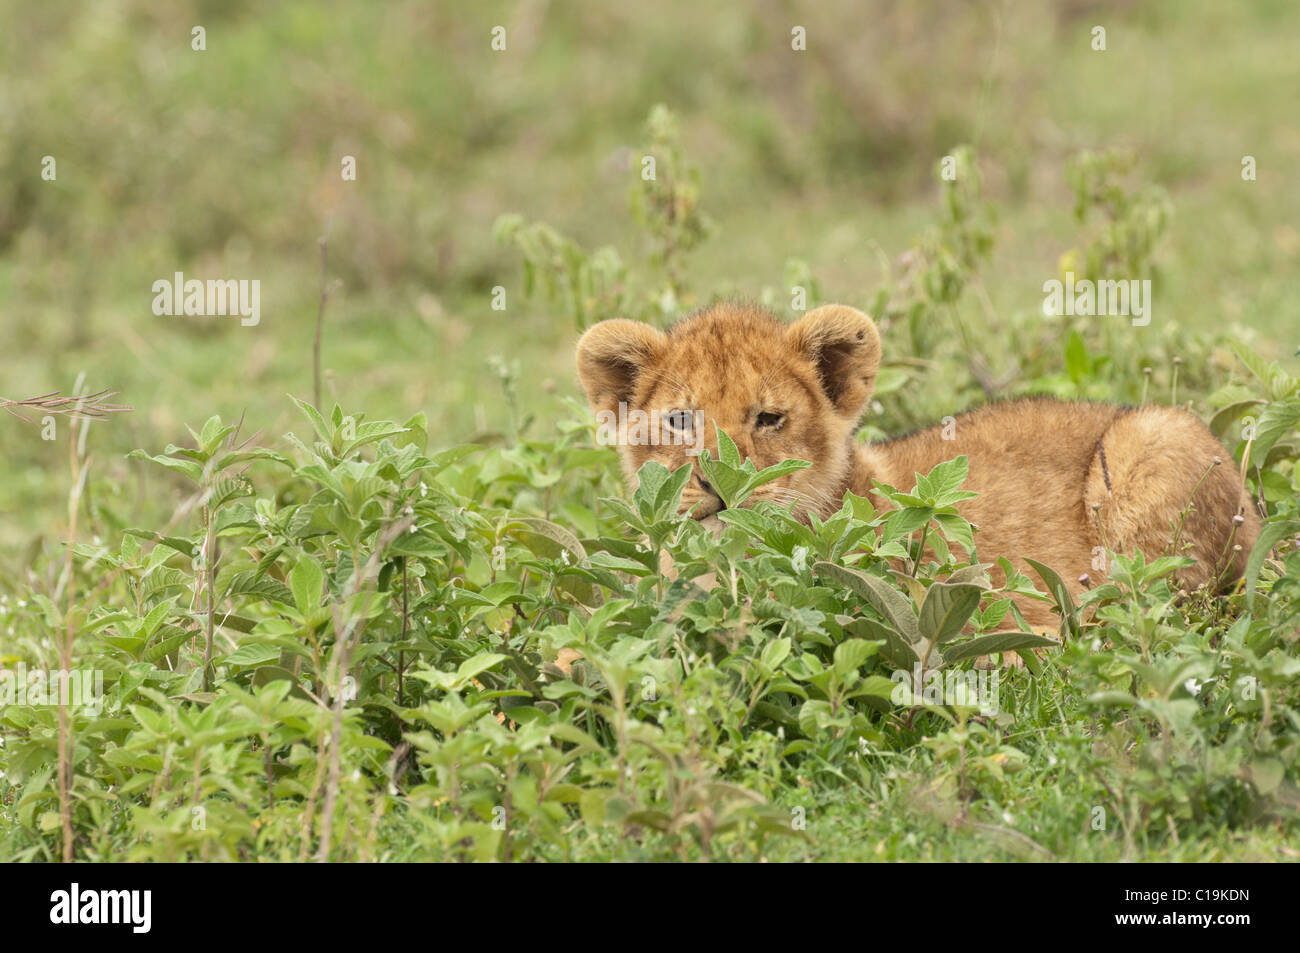 Stock Foto von ein Löwenjunges ruht in grüner Vegetation. Stockfoto